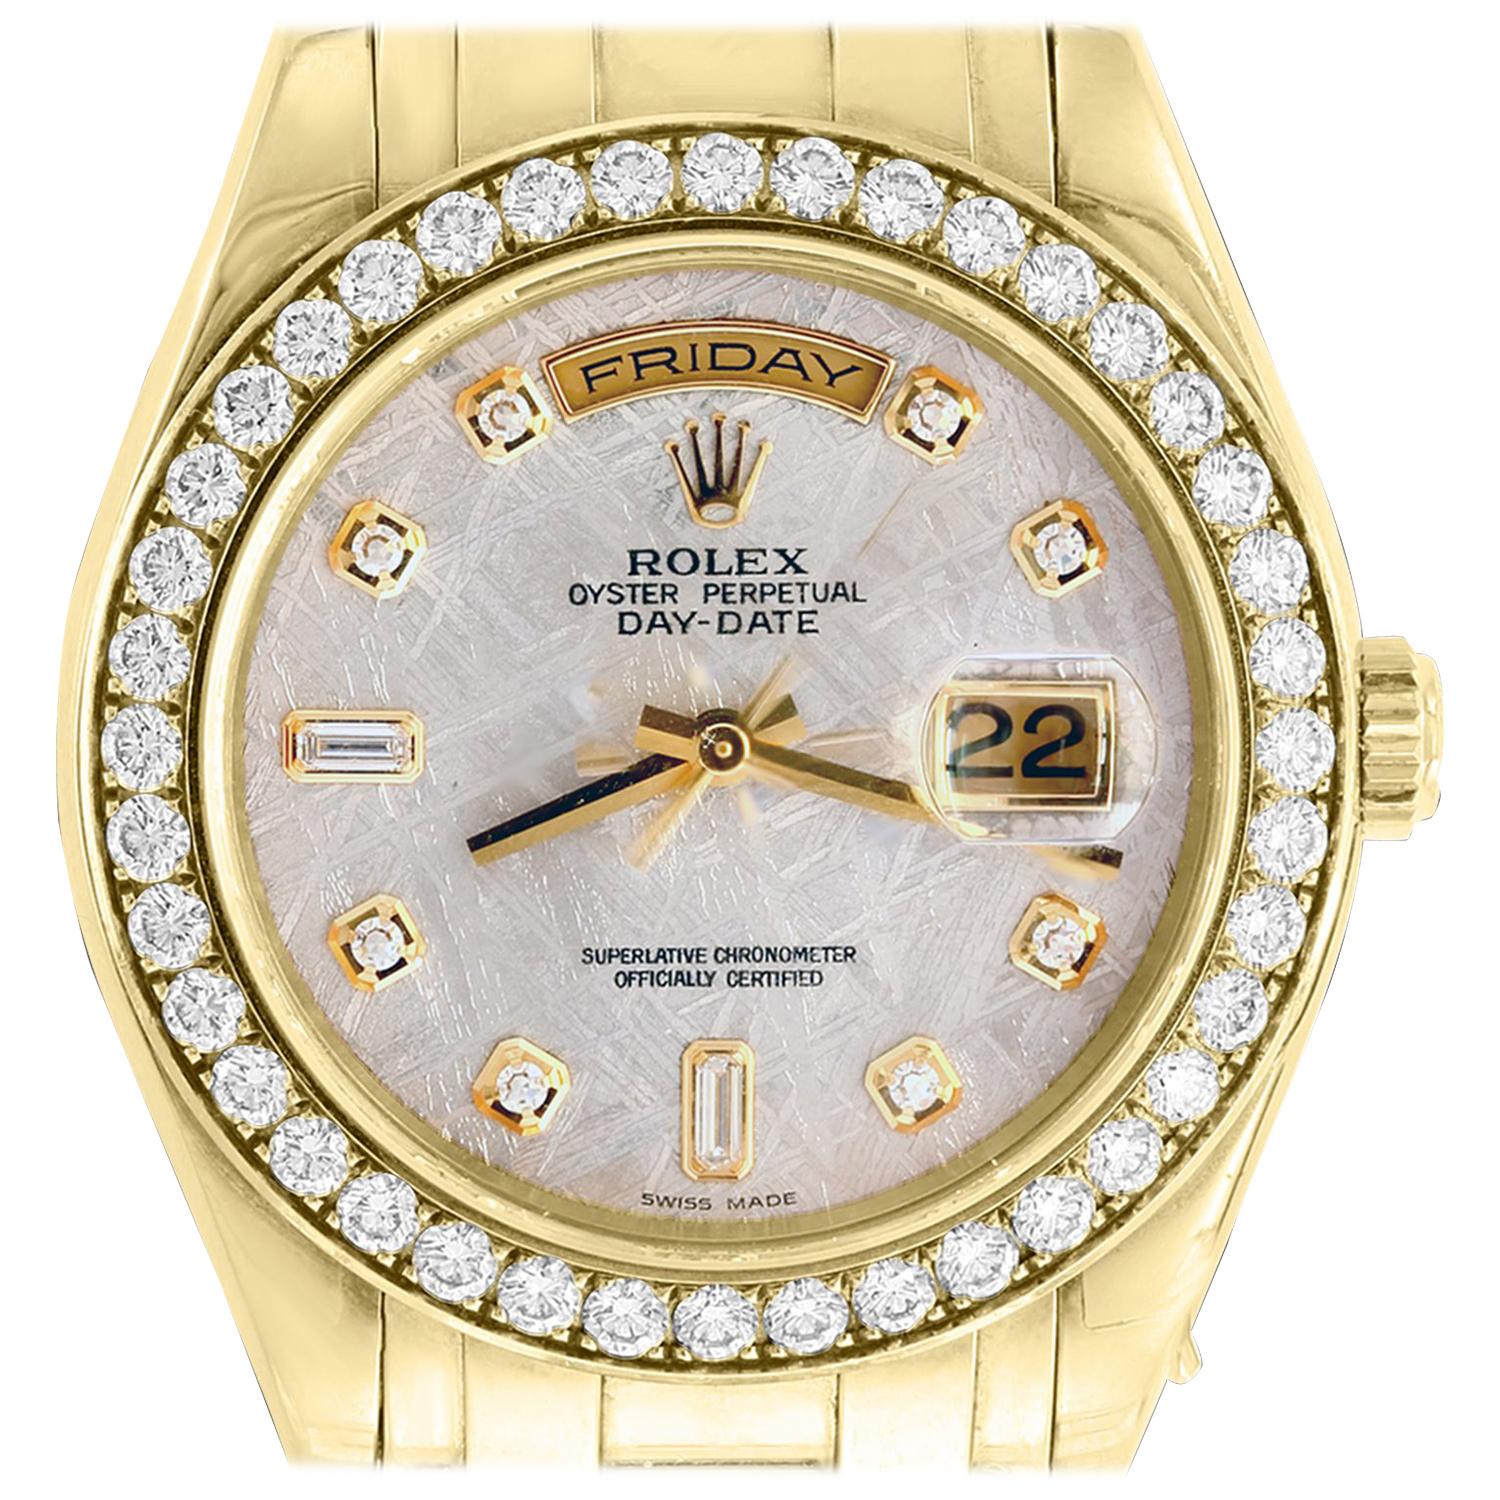 Rolex Day-Date Masterpiece 18 Karat Yellow Gold Watch Meteorite Diamond Dial